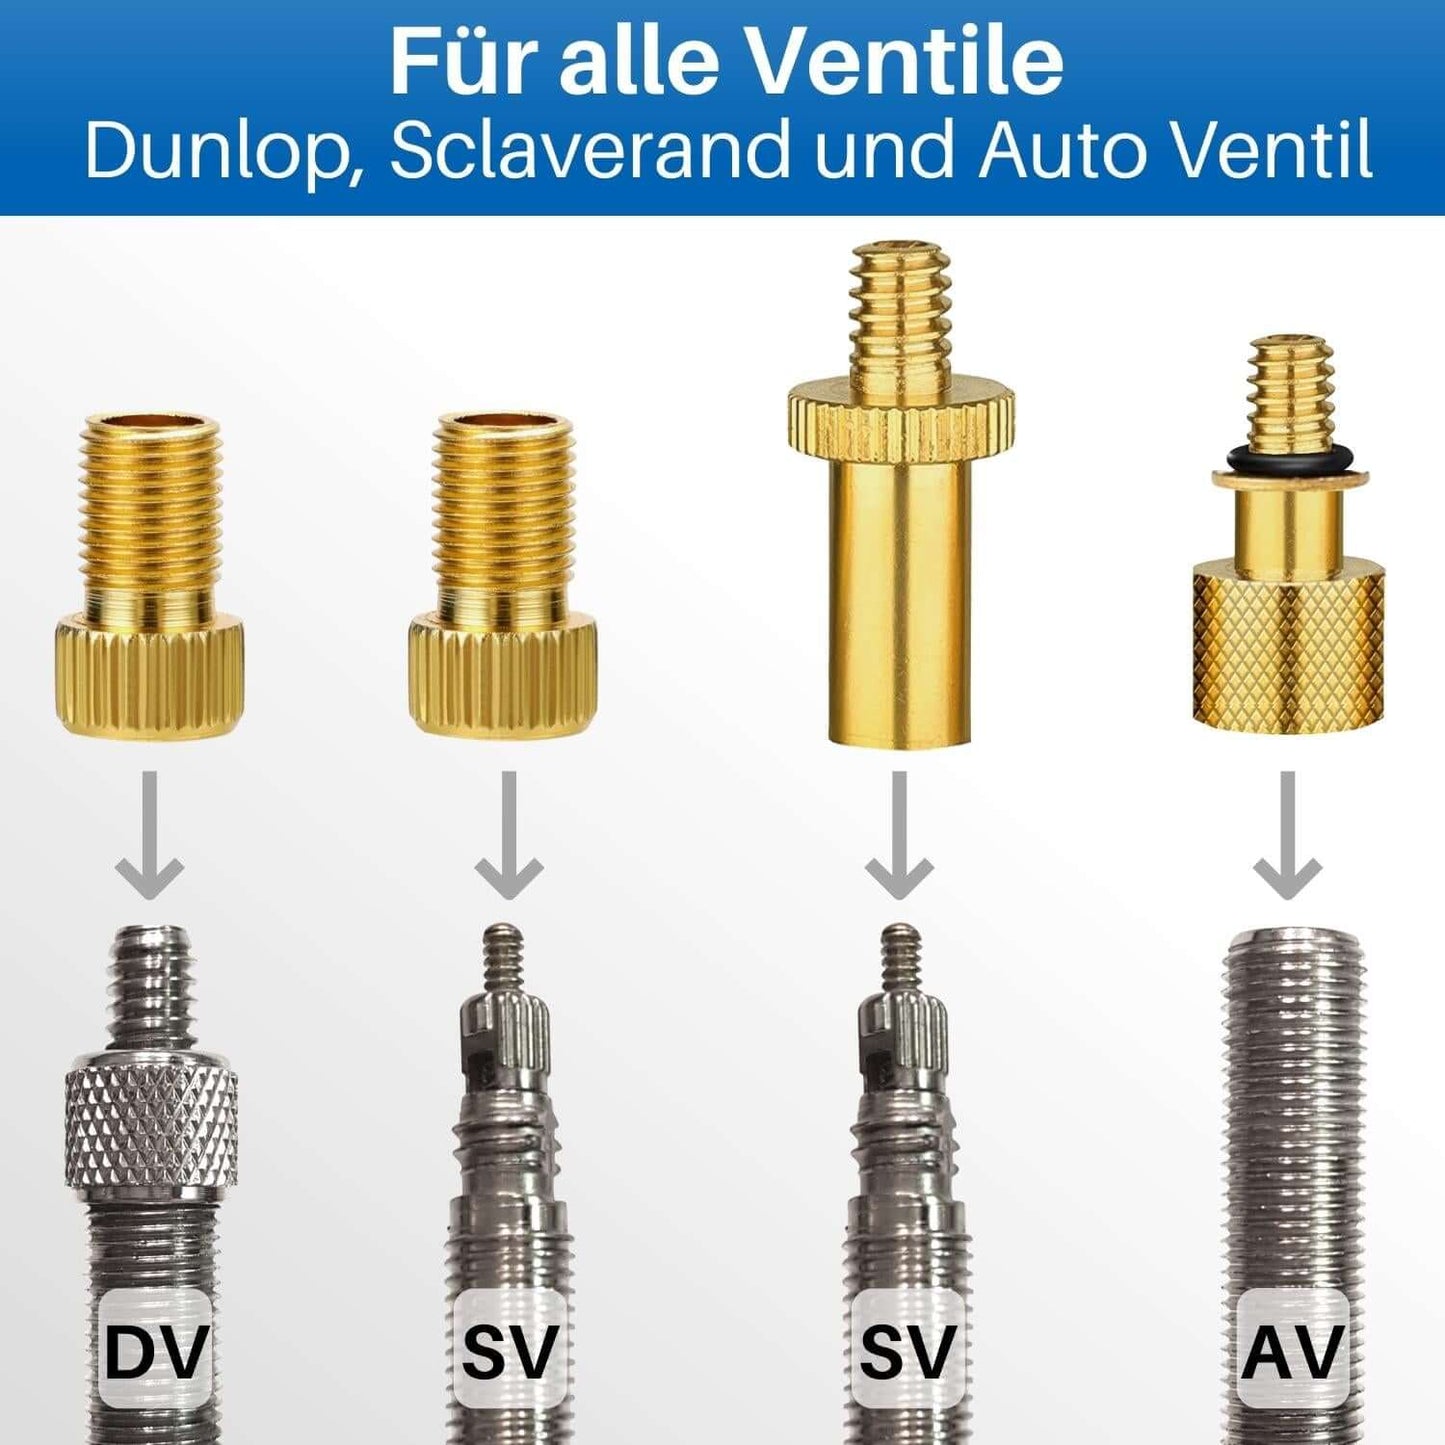 Die Ventiladapter passen auf DV, SV und AV Ventile.